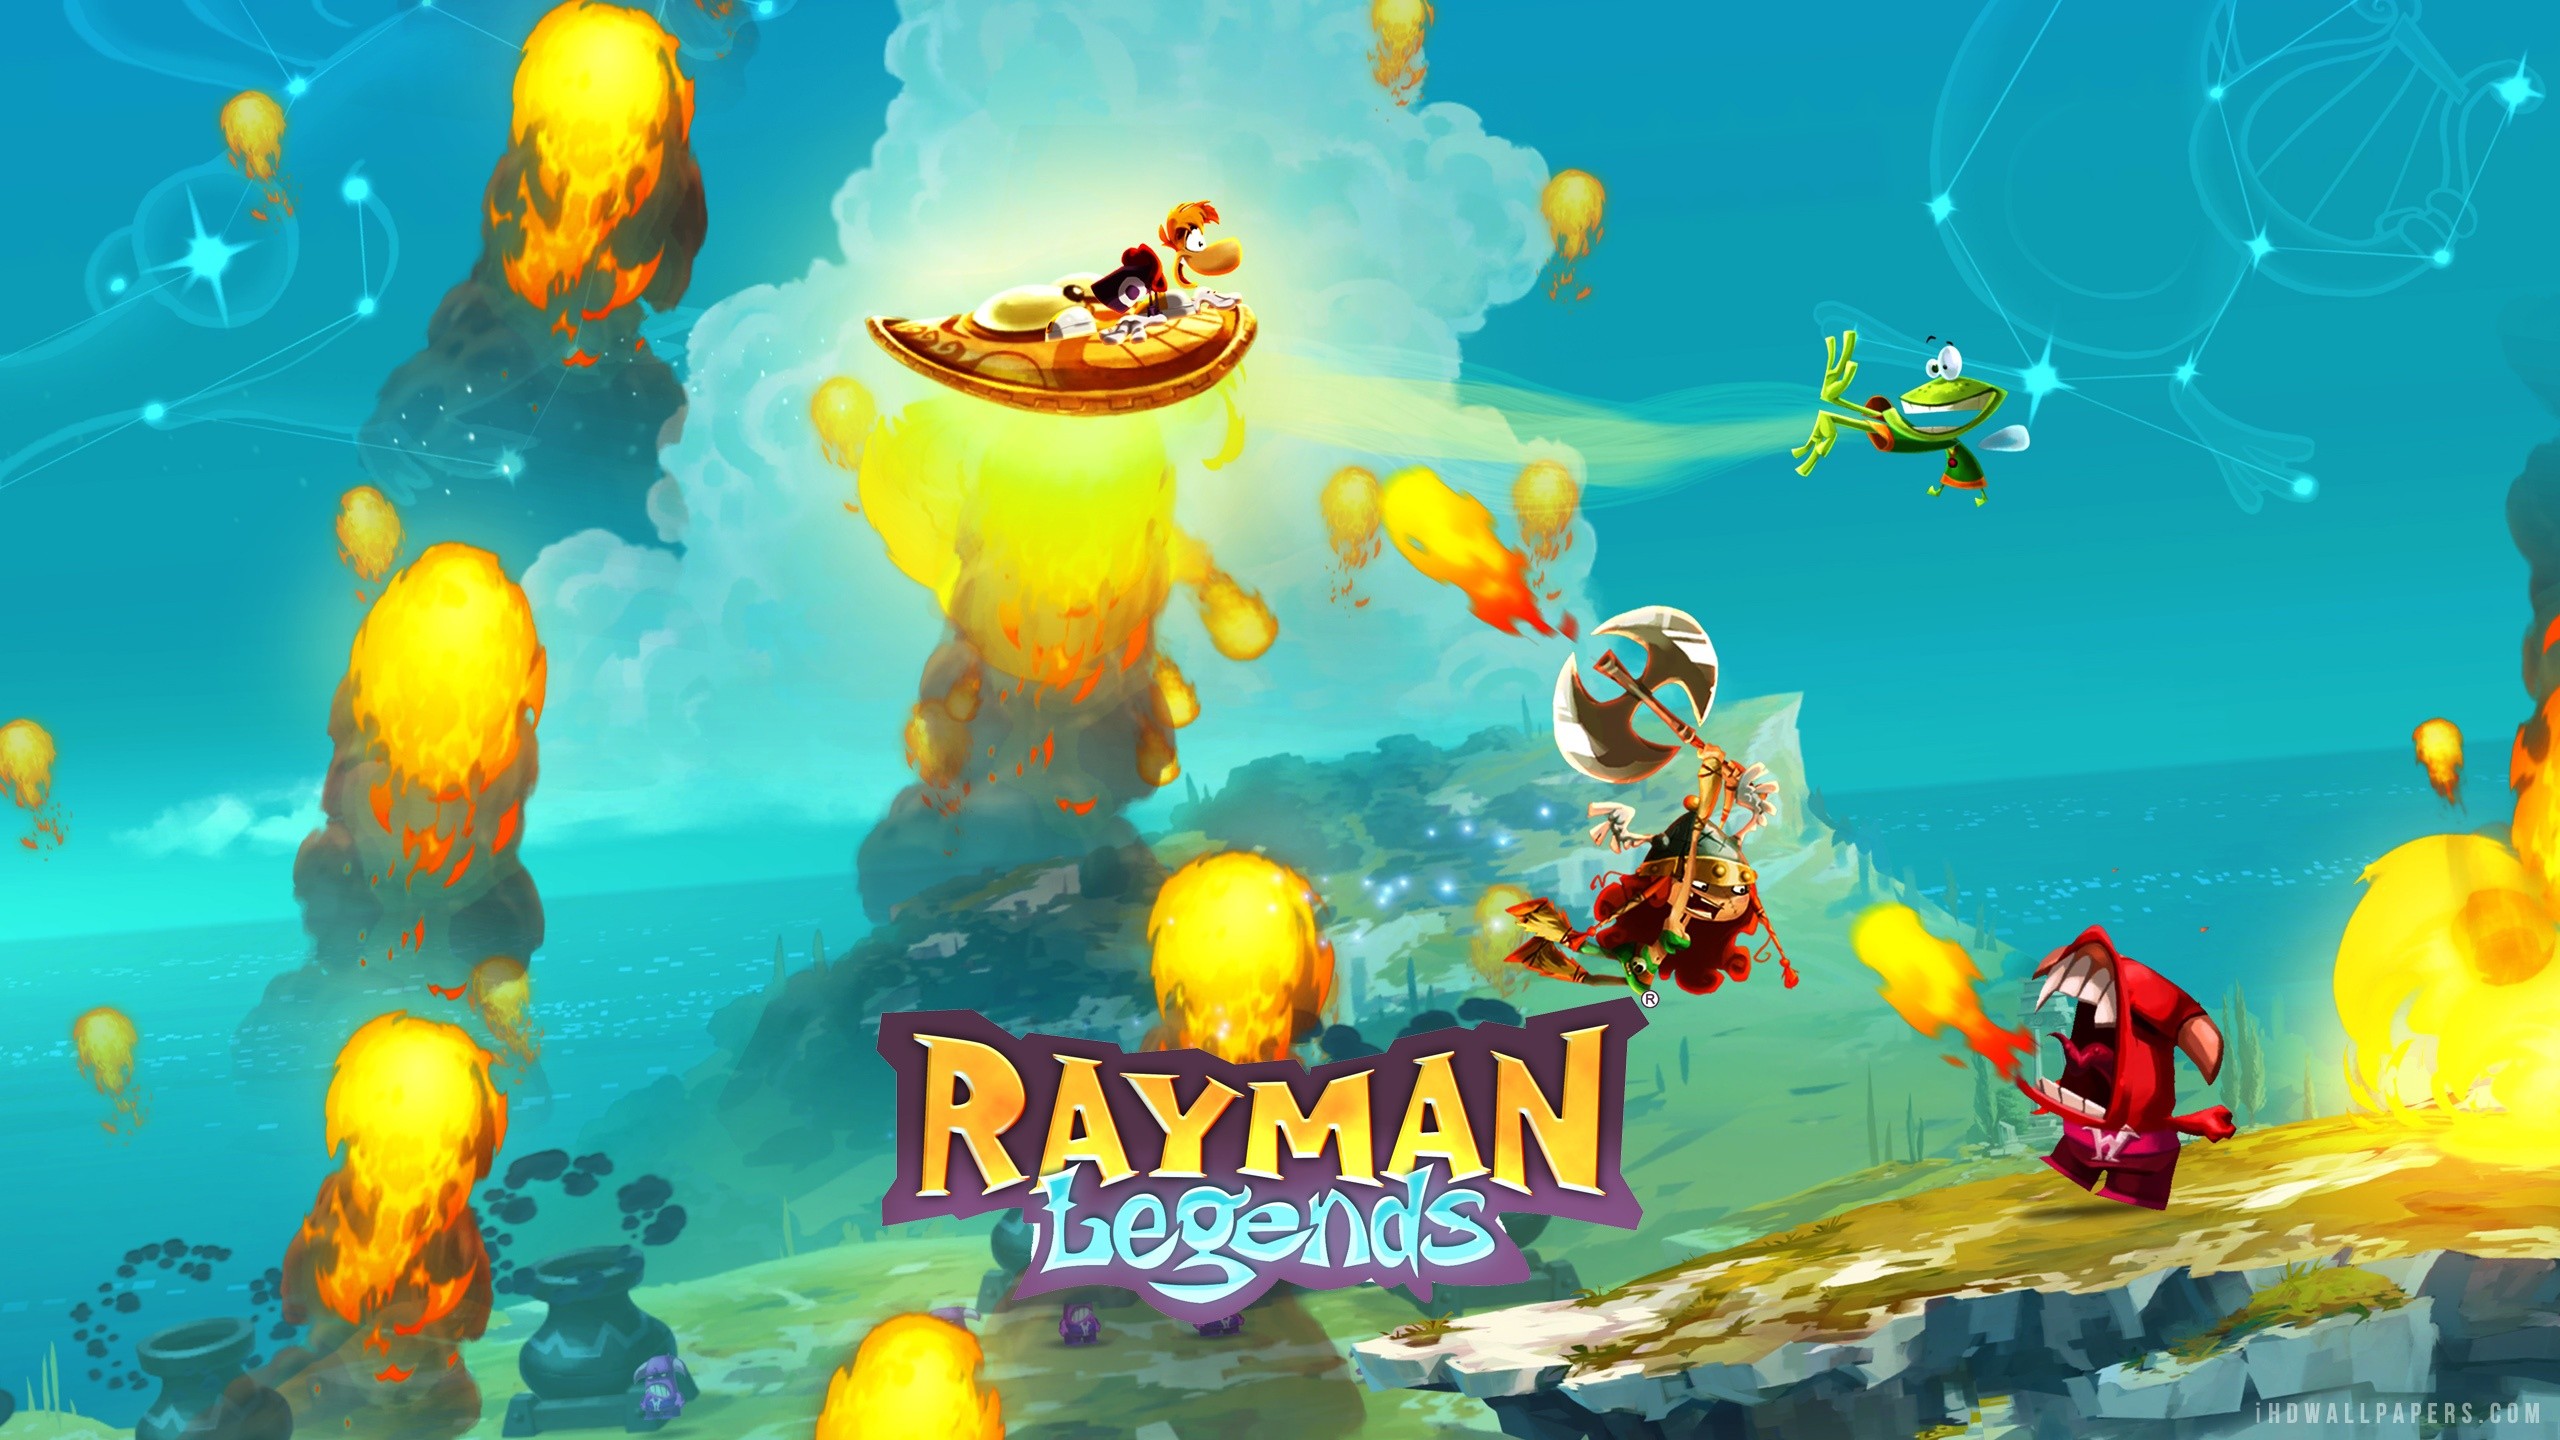 rayman legenden tapete,action adventure spiel,spiele,bildschirmfoto,computerspiel,erfundener charakter